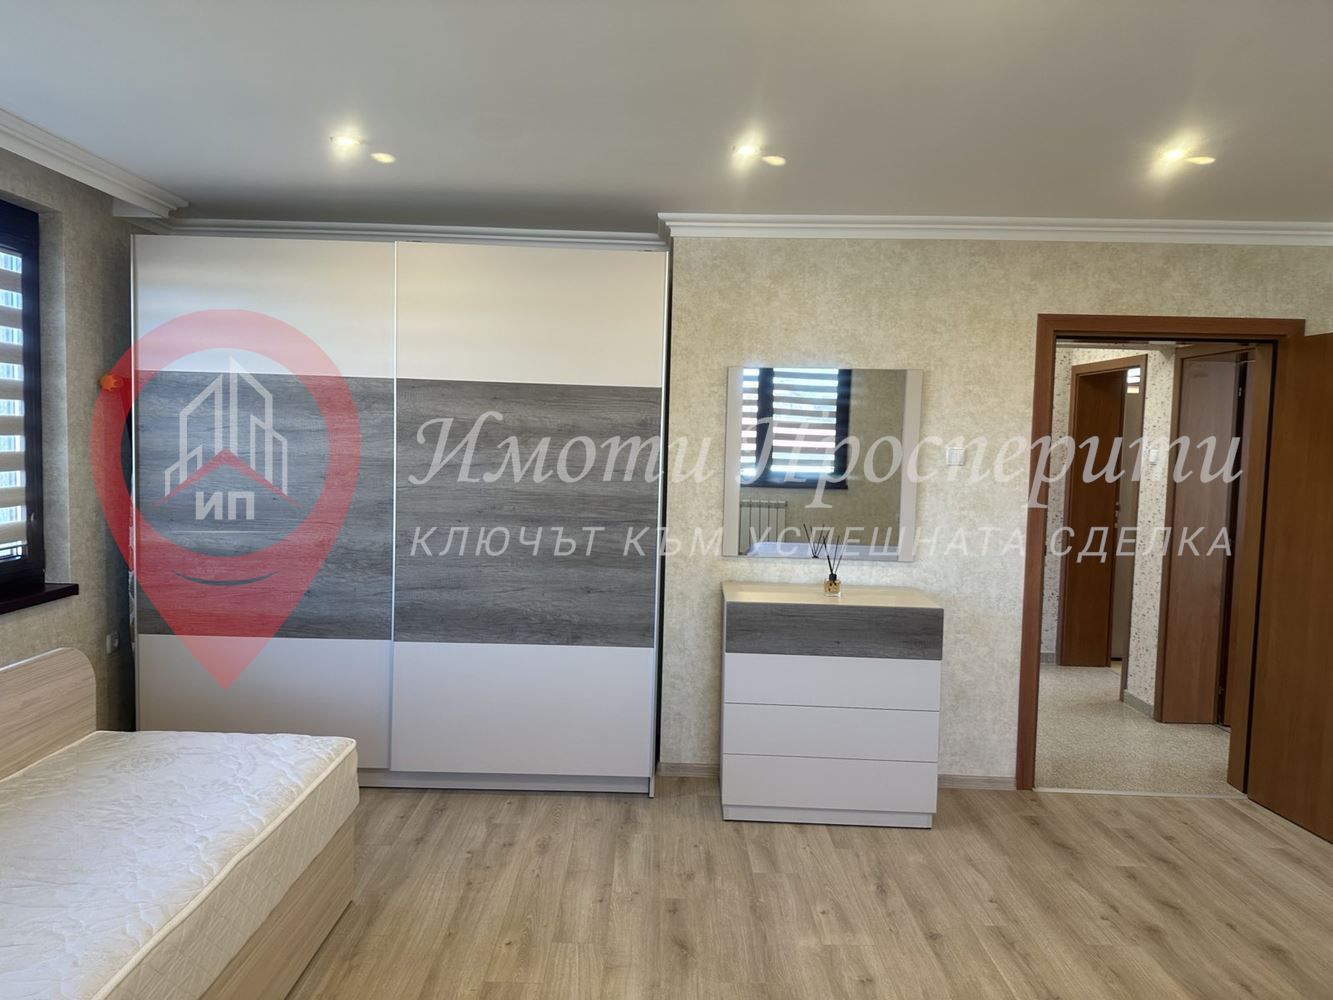 Етаж от къща в София-Требич площ 120 цена 720